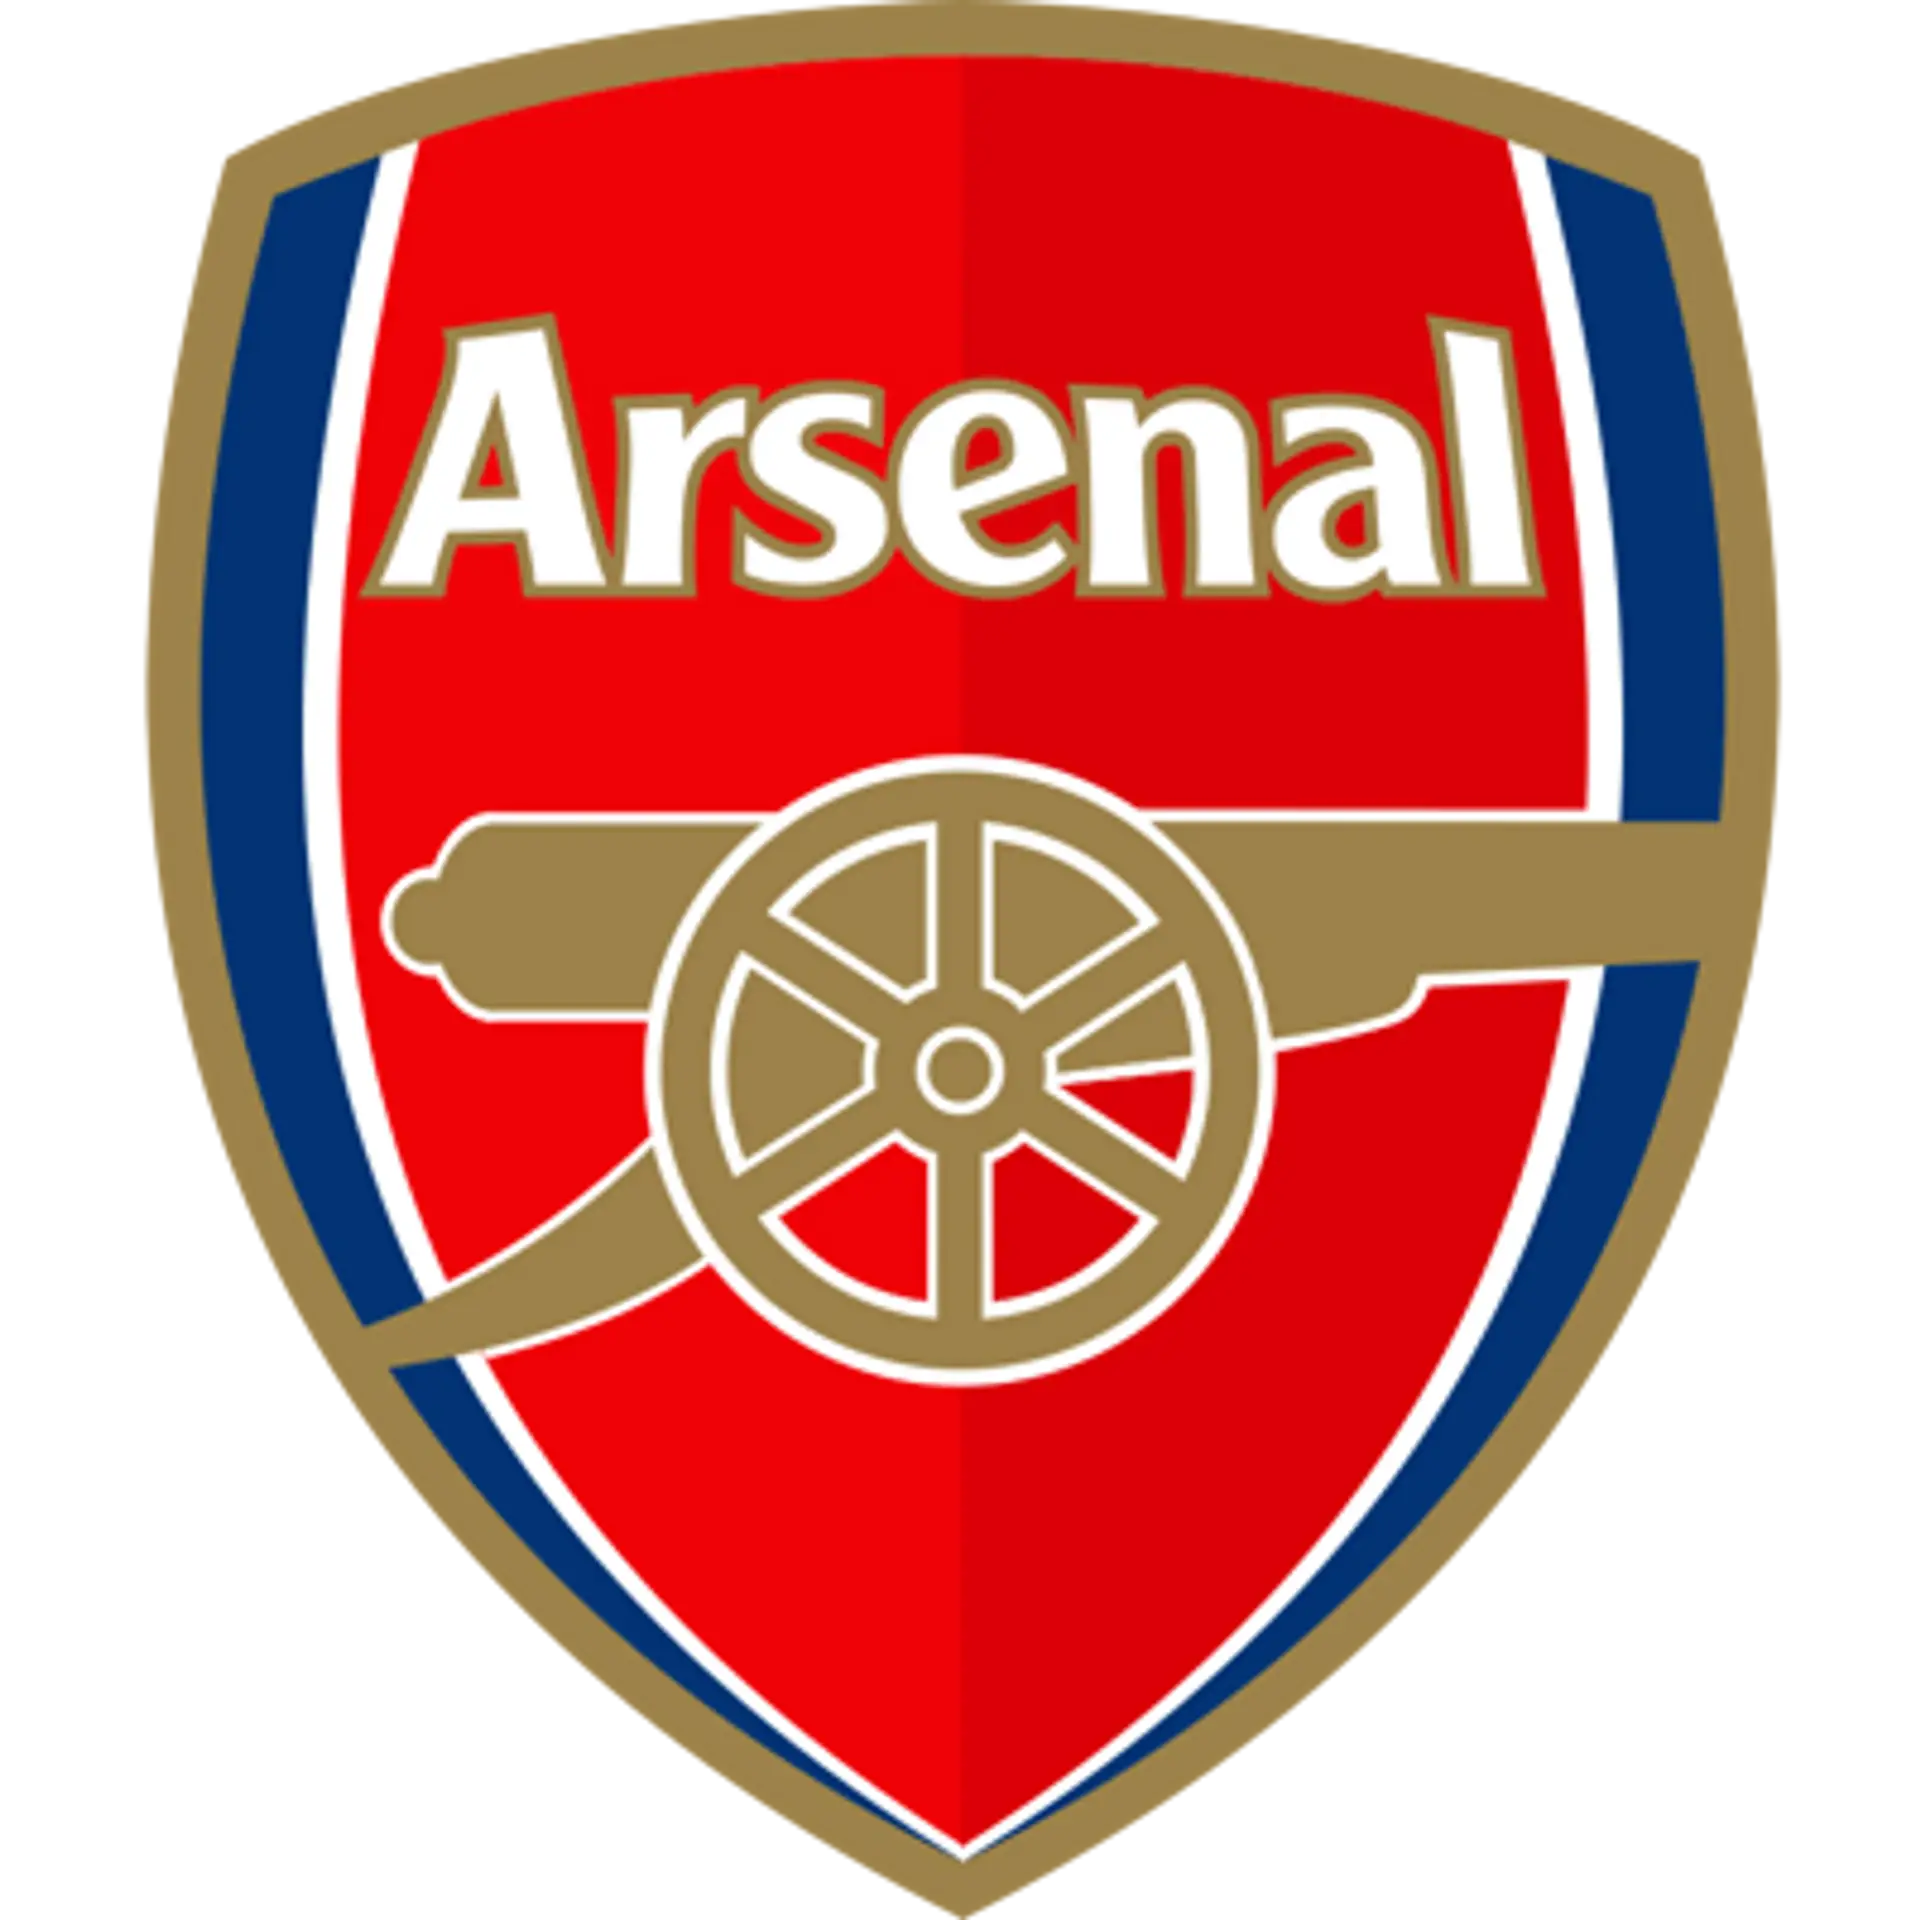 Arsenal News 